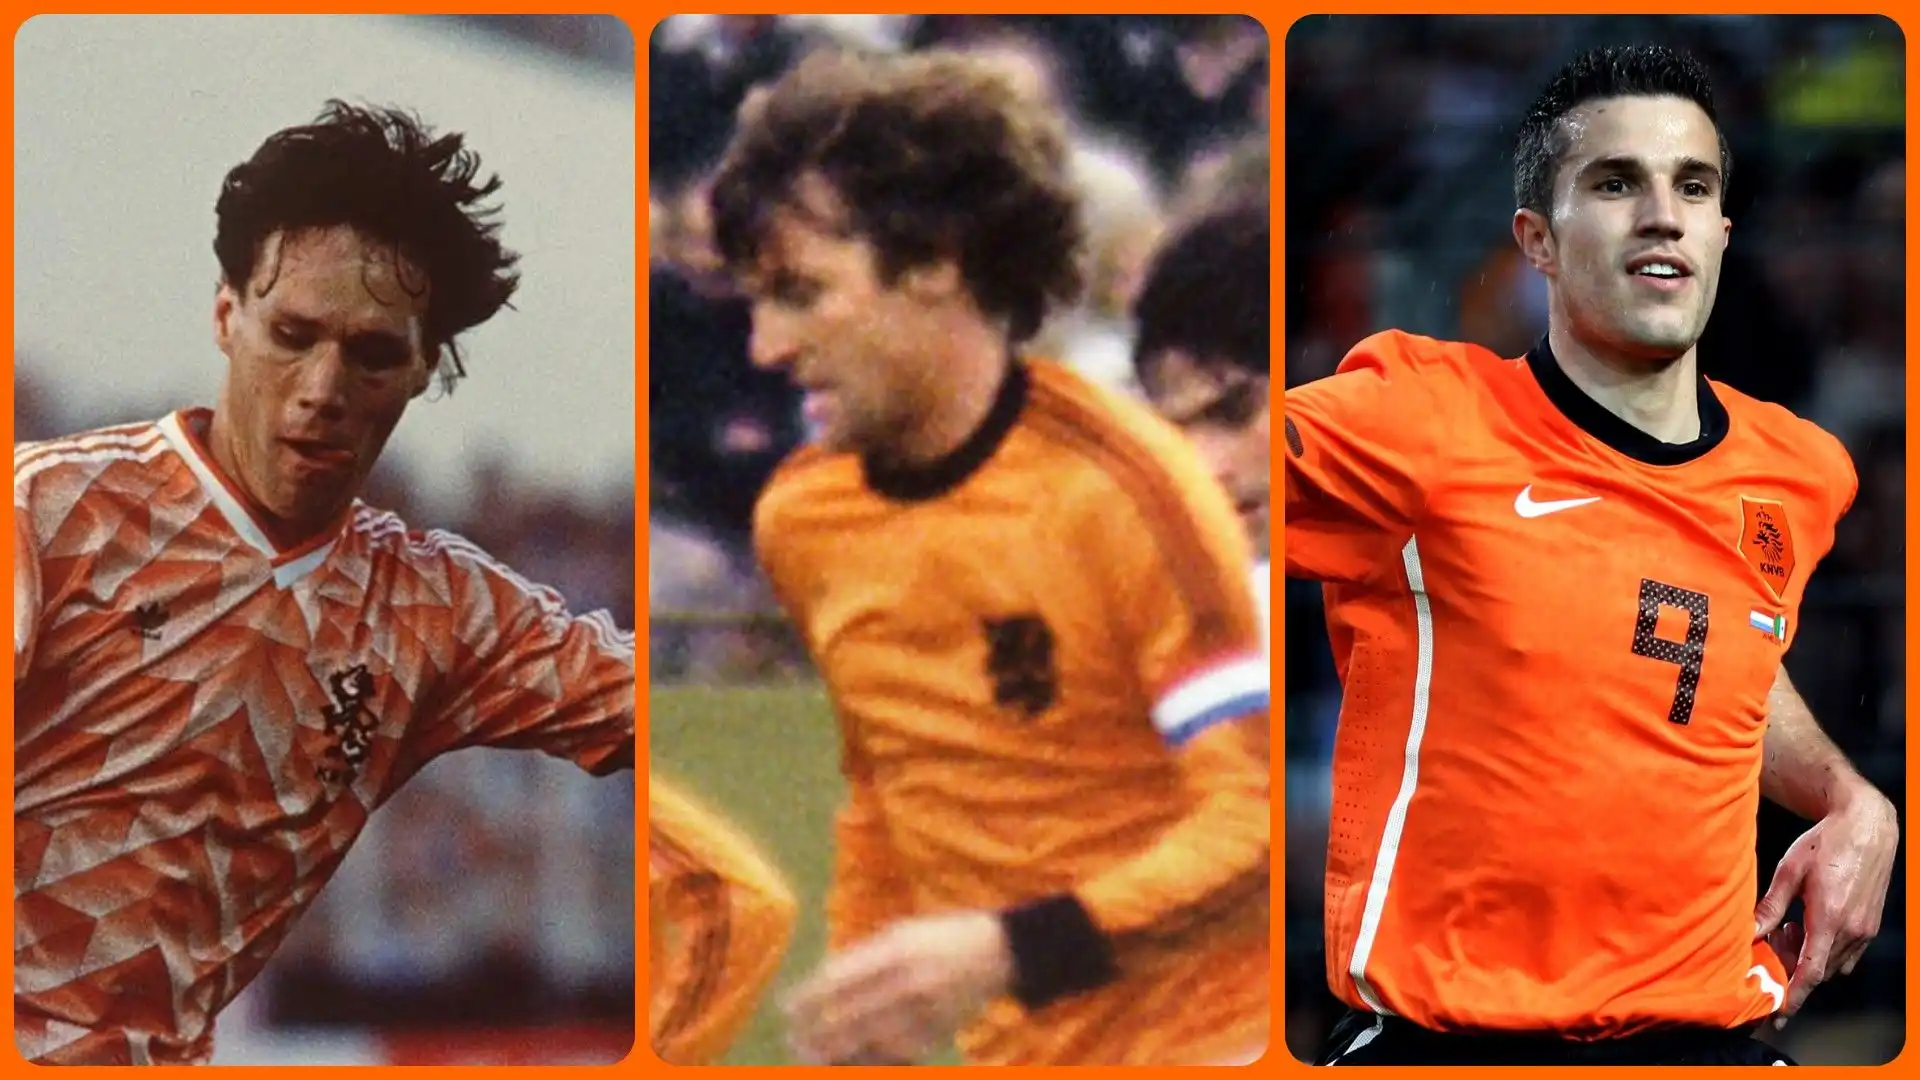 I migliori calciatori olandesi secondo l'intelligenza artificiale: ecco chi sono